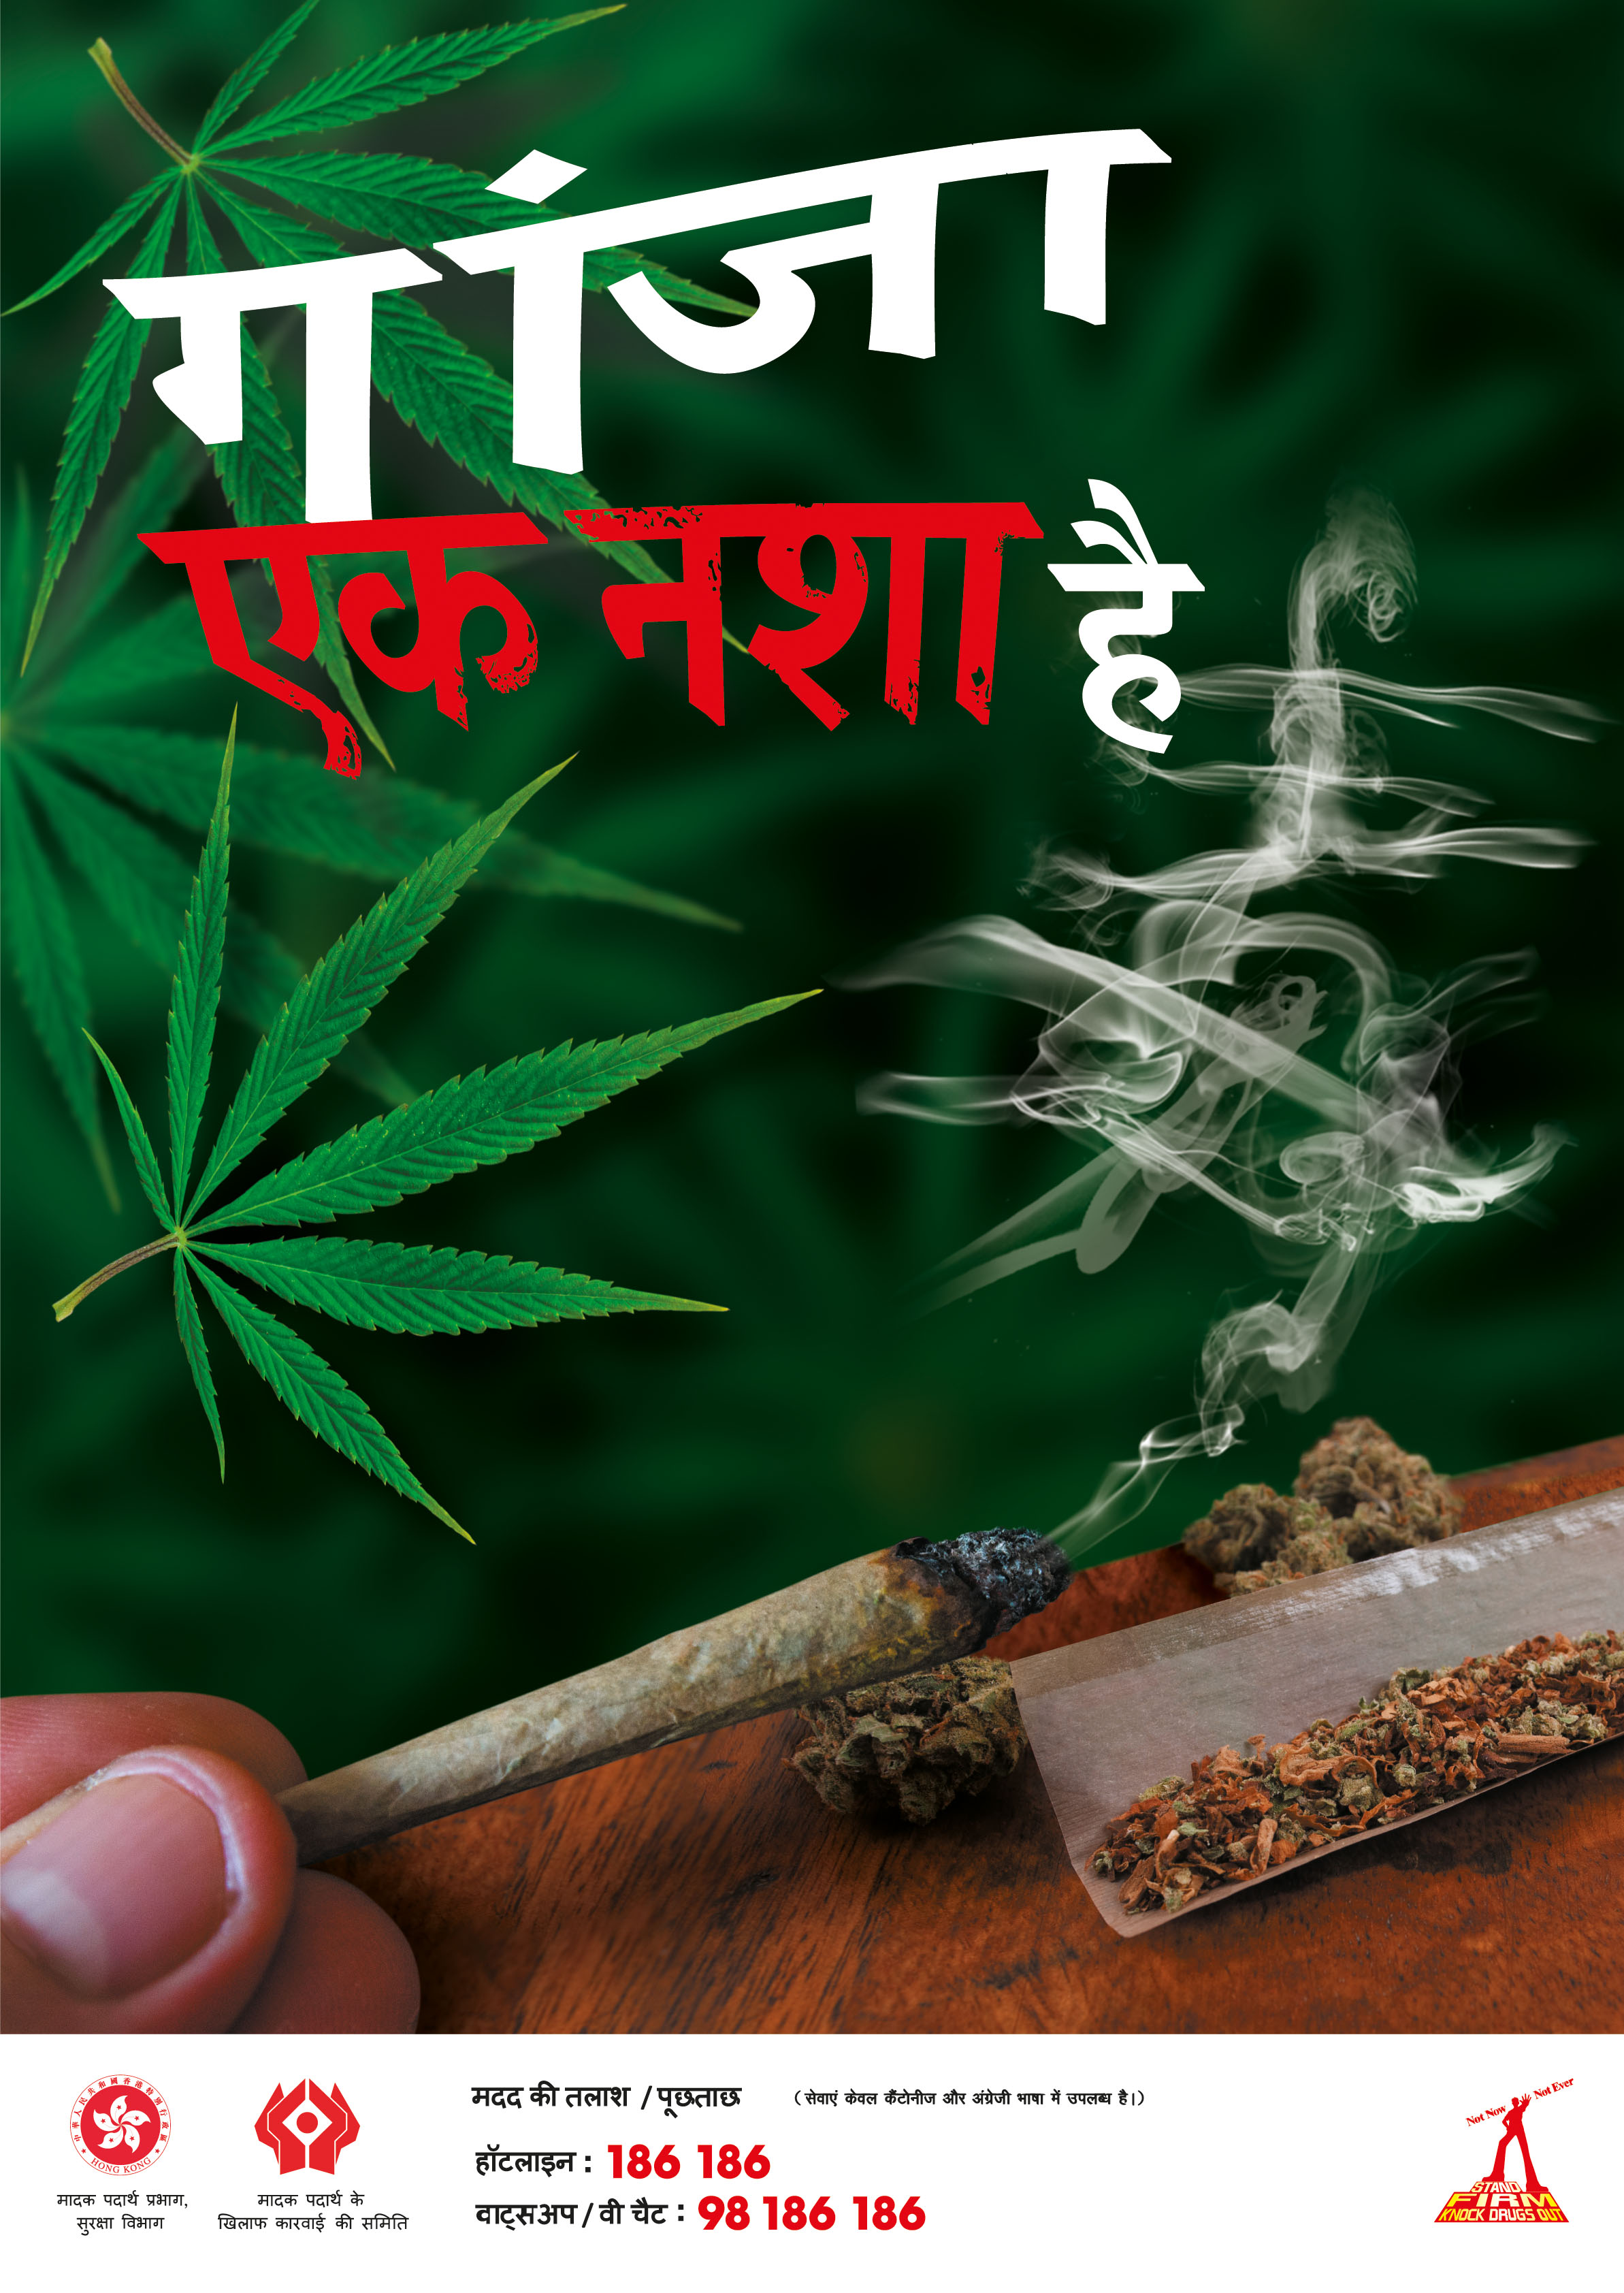 禁毒海報「大麻係毒品 」－ 印度文版本